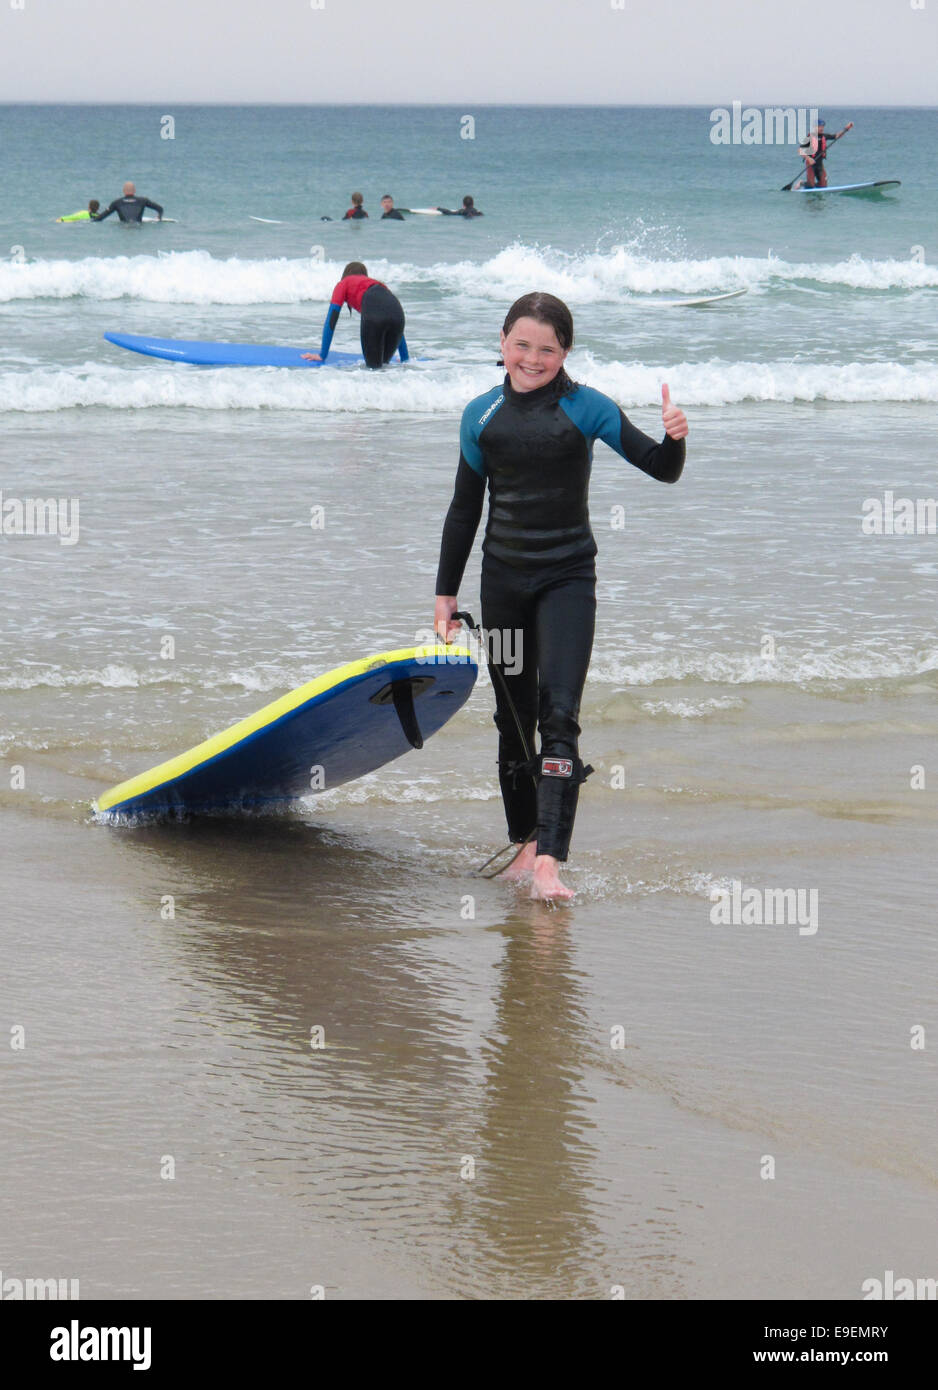 Conexión diario Limpiar el piso Niña arrastrando su tabla de surf en la playa mar después de una sesión de  surf, UK Ella lleva un traje de neopreno, sonriente y está haciendo un  pulgar hacia arriba Fotografía